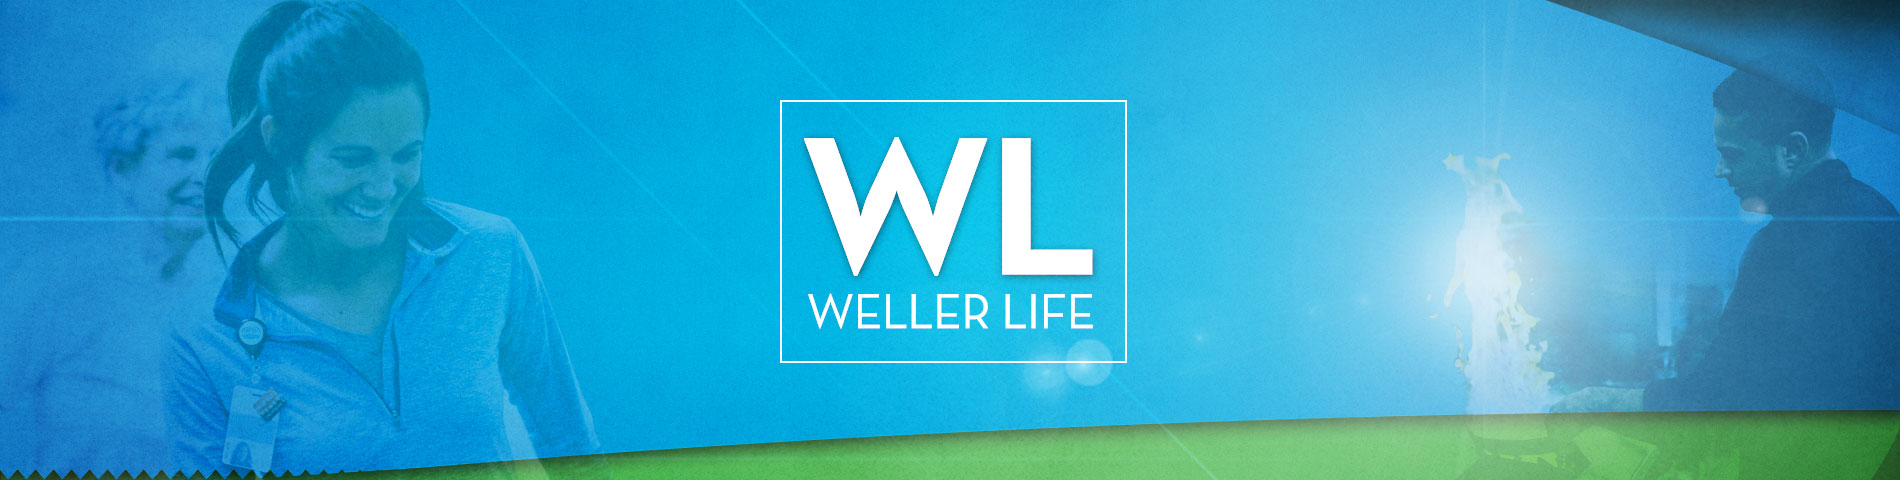 The Weller Life November